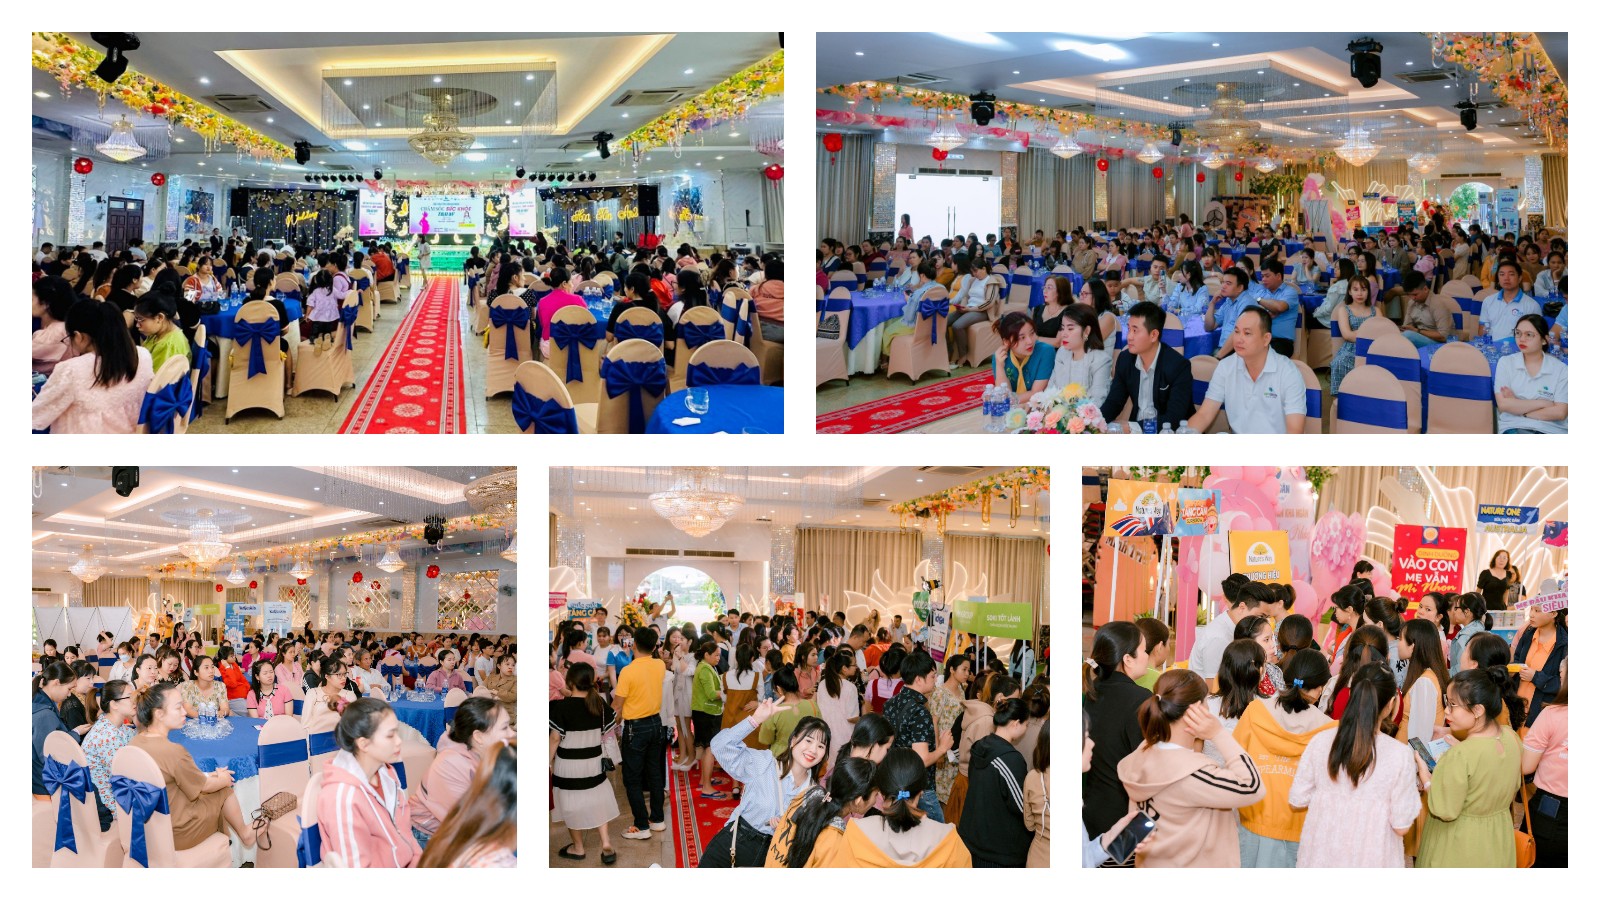 Hội thảo tiền sản Kha Ngân được tổ chức hoành tráng với quy mô lớn tại Bình Định, thu hút sự tham gia của đông đảo các mẹ bỉm sữa